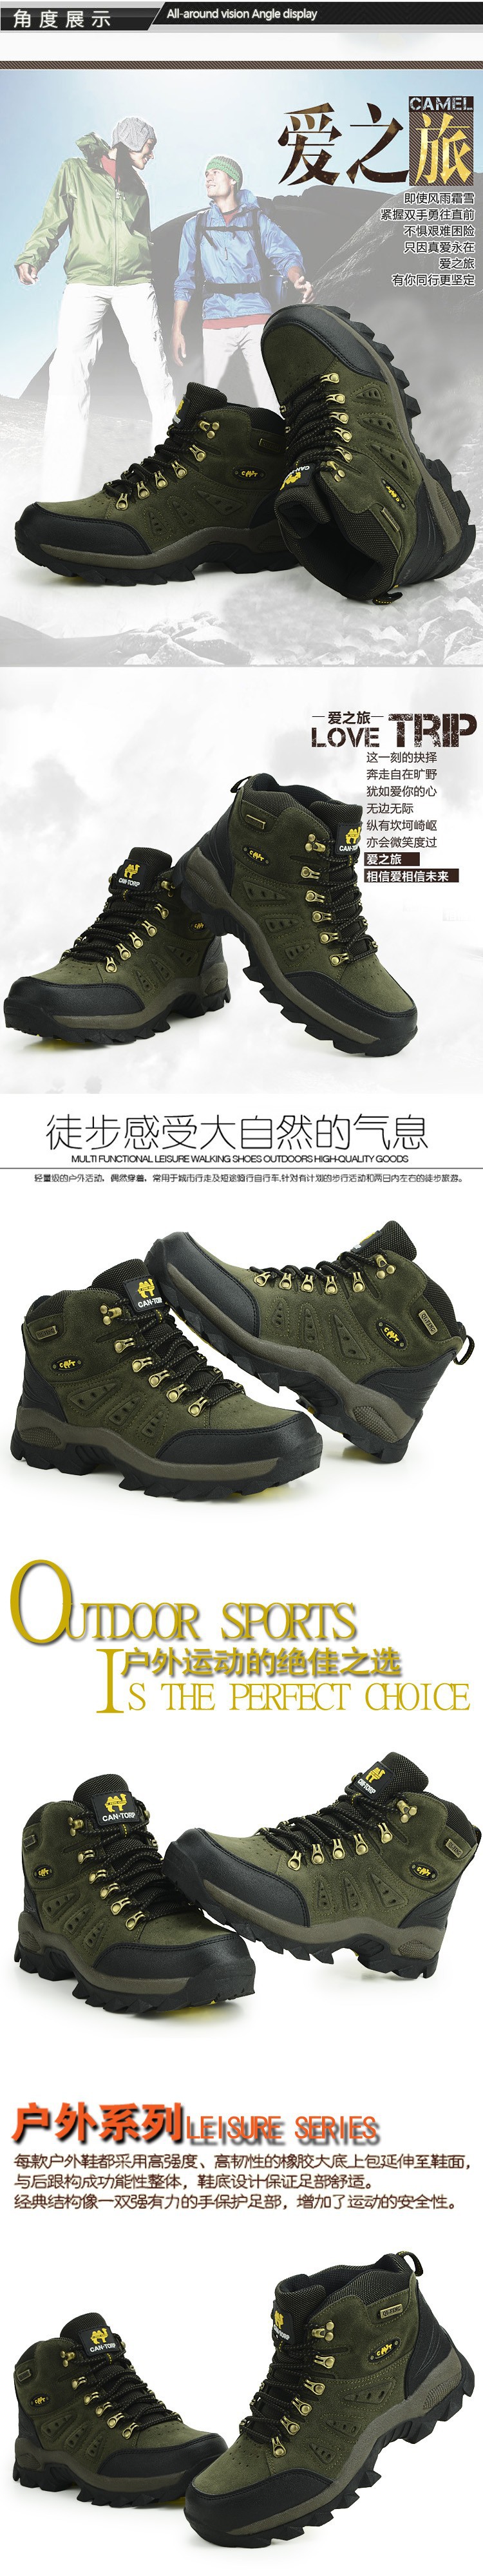 hiking shoes hs34d90 (8)